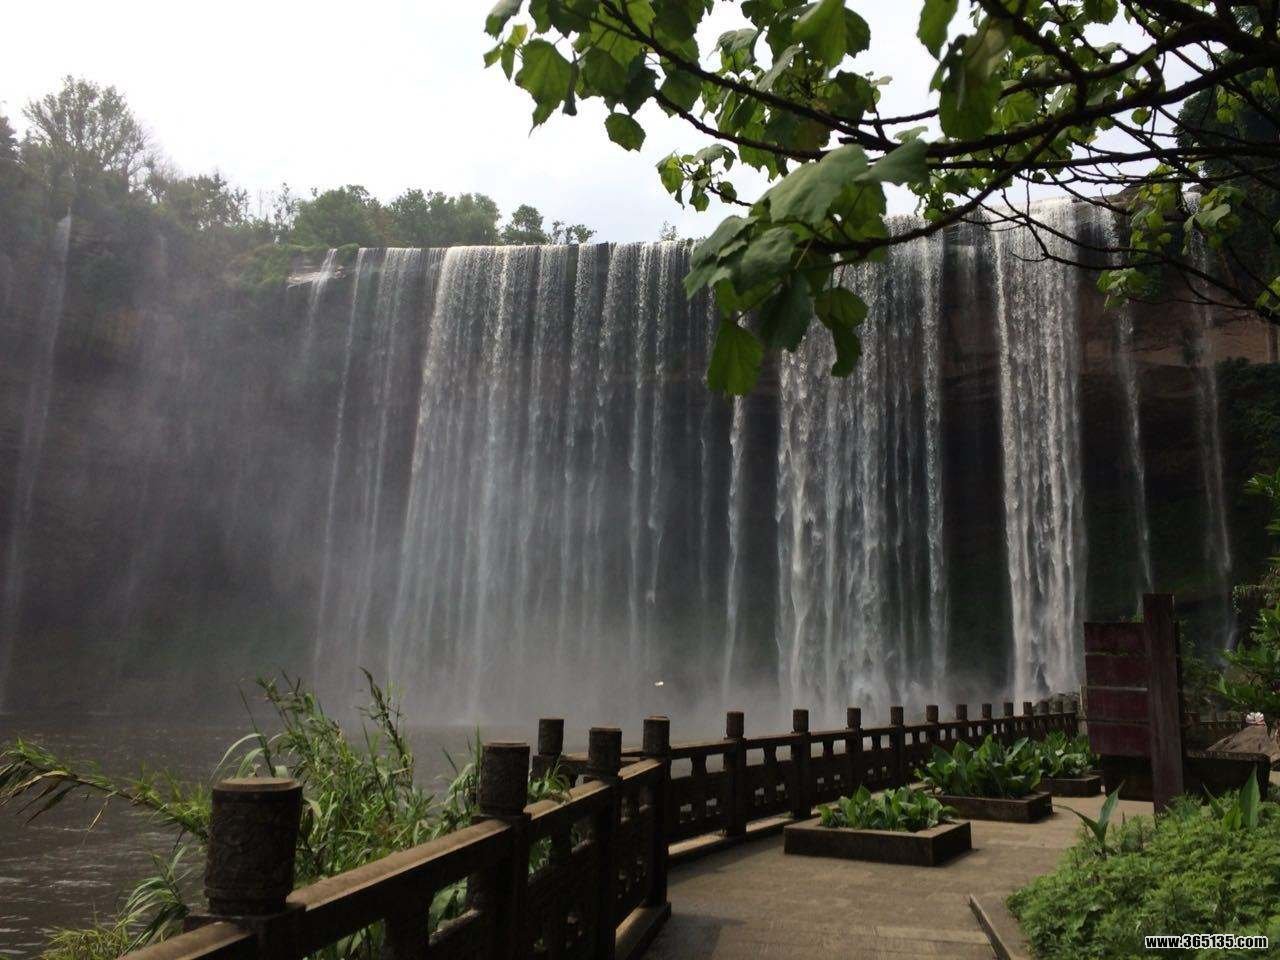 【携程攻略】重庆万州大瀑布景点,还没看见瀑布,先听见瀑布的声音,好像叠叠的浪涌上岸滩,... 瀑布飞流…